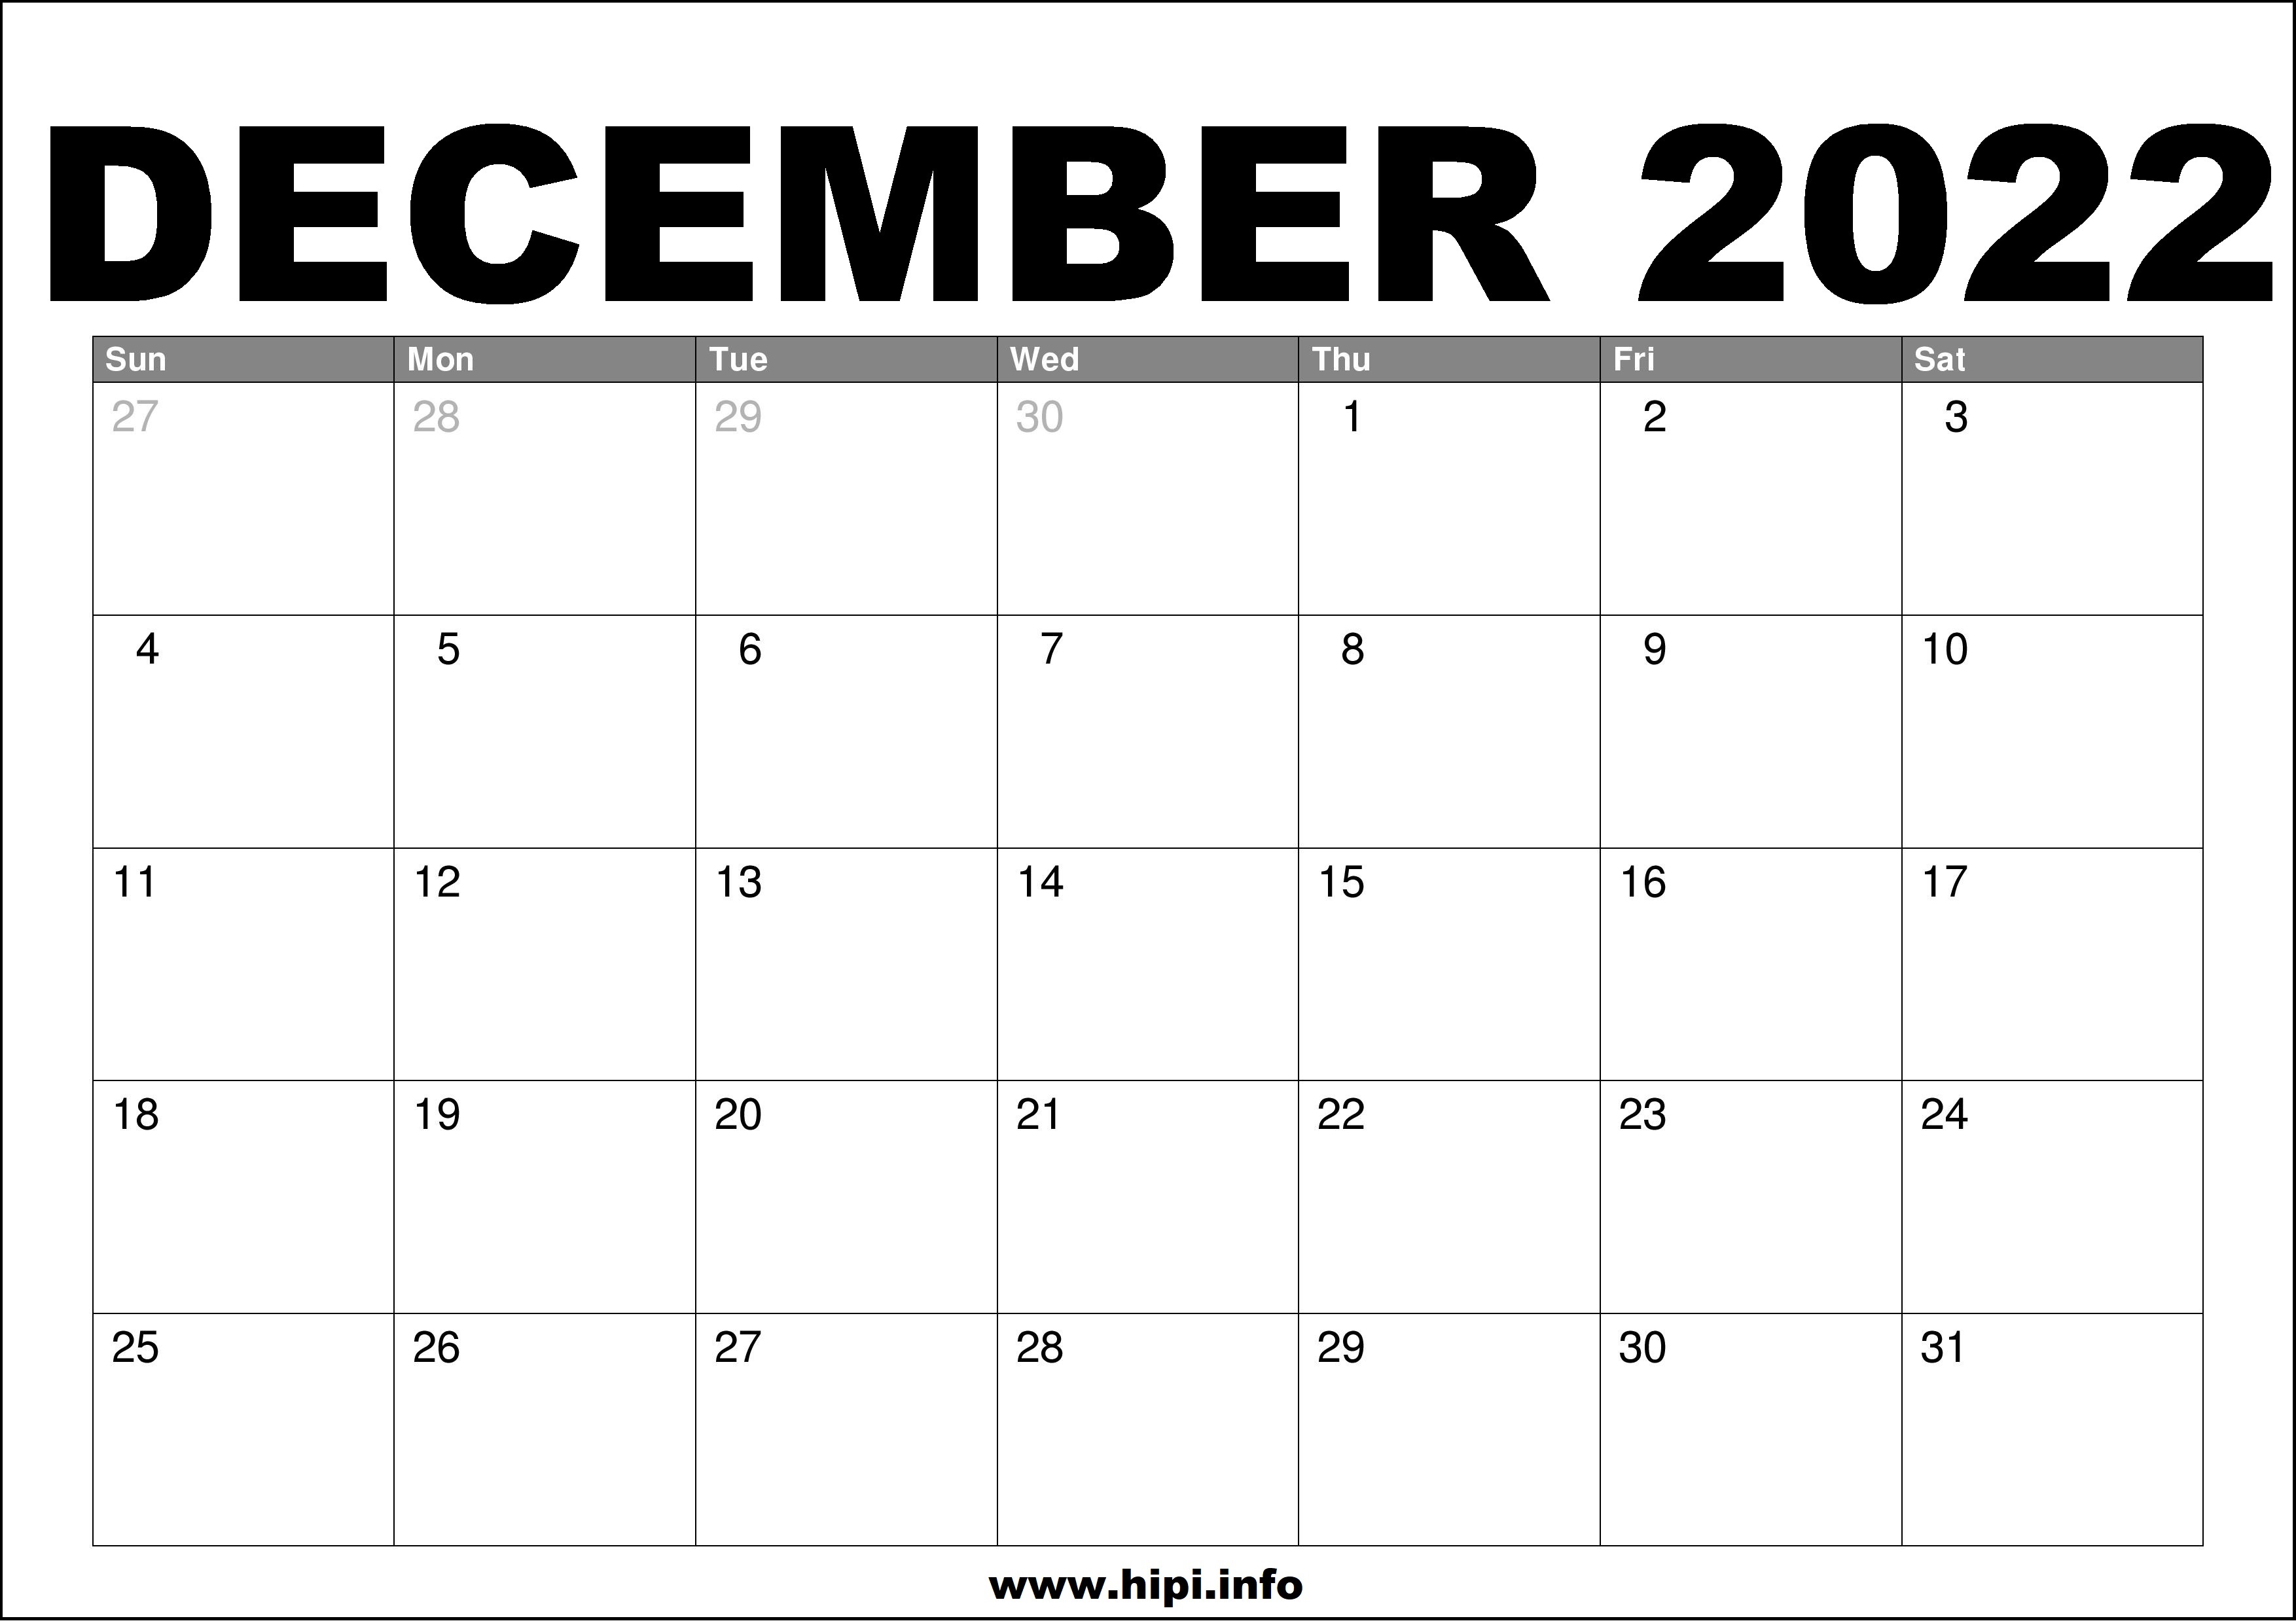 Free Calendar December 2022 December 2022 Calendar Printable Free - Hipi.info | Calendars Printable Free